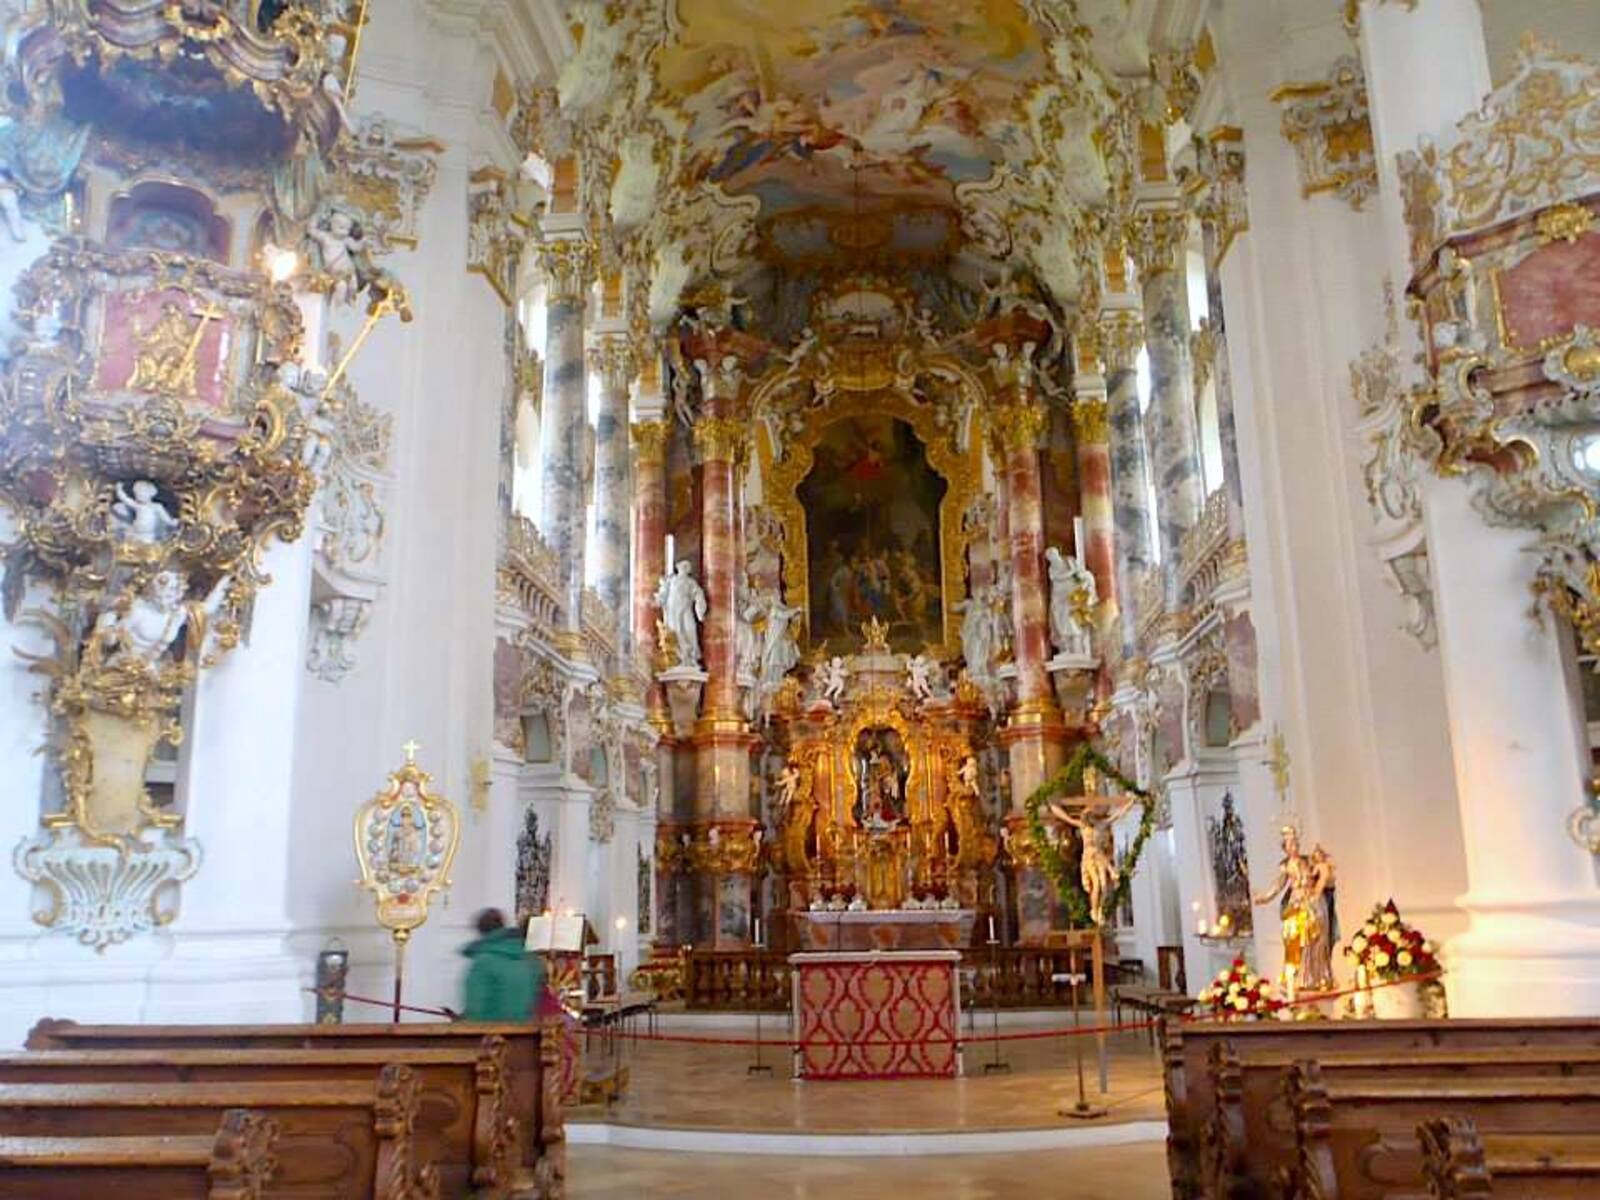 White Church of Bavaria, Wieskirche in Germany